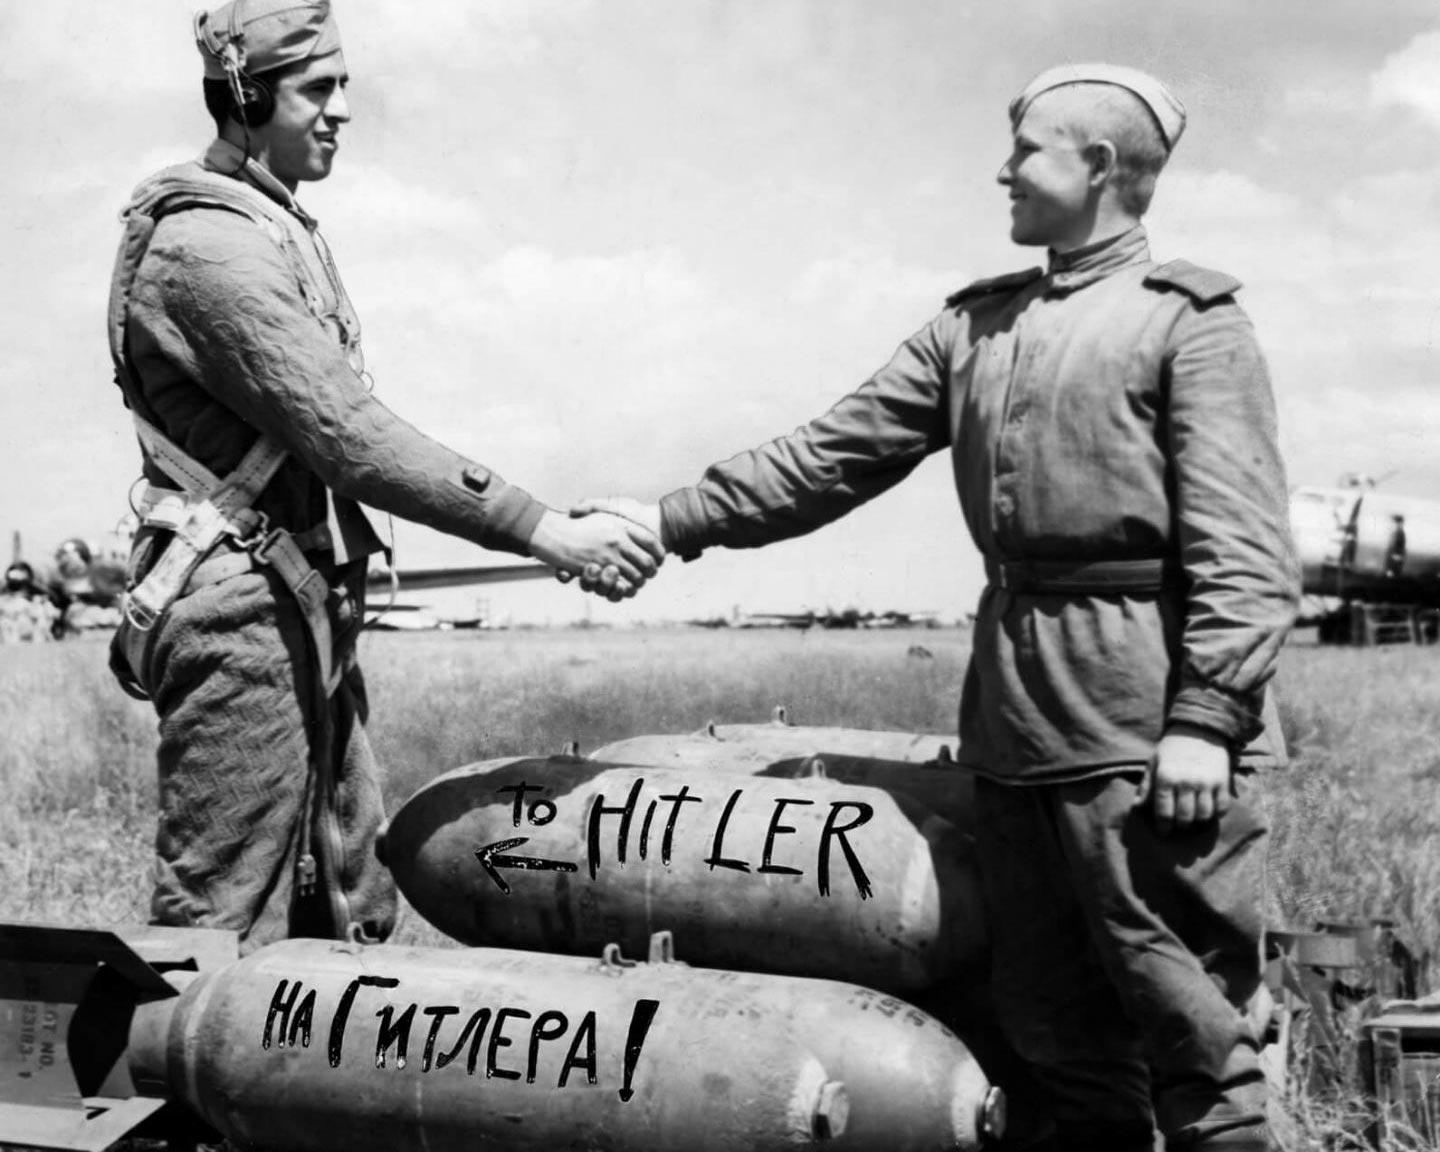 Американский лётчик и советский солдат пожимают руки над бомбами, 1944 год.